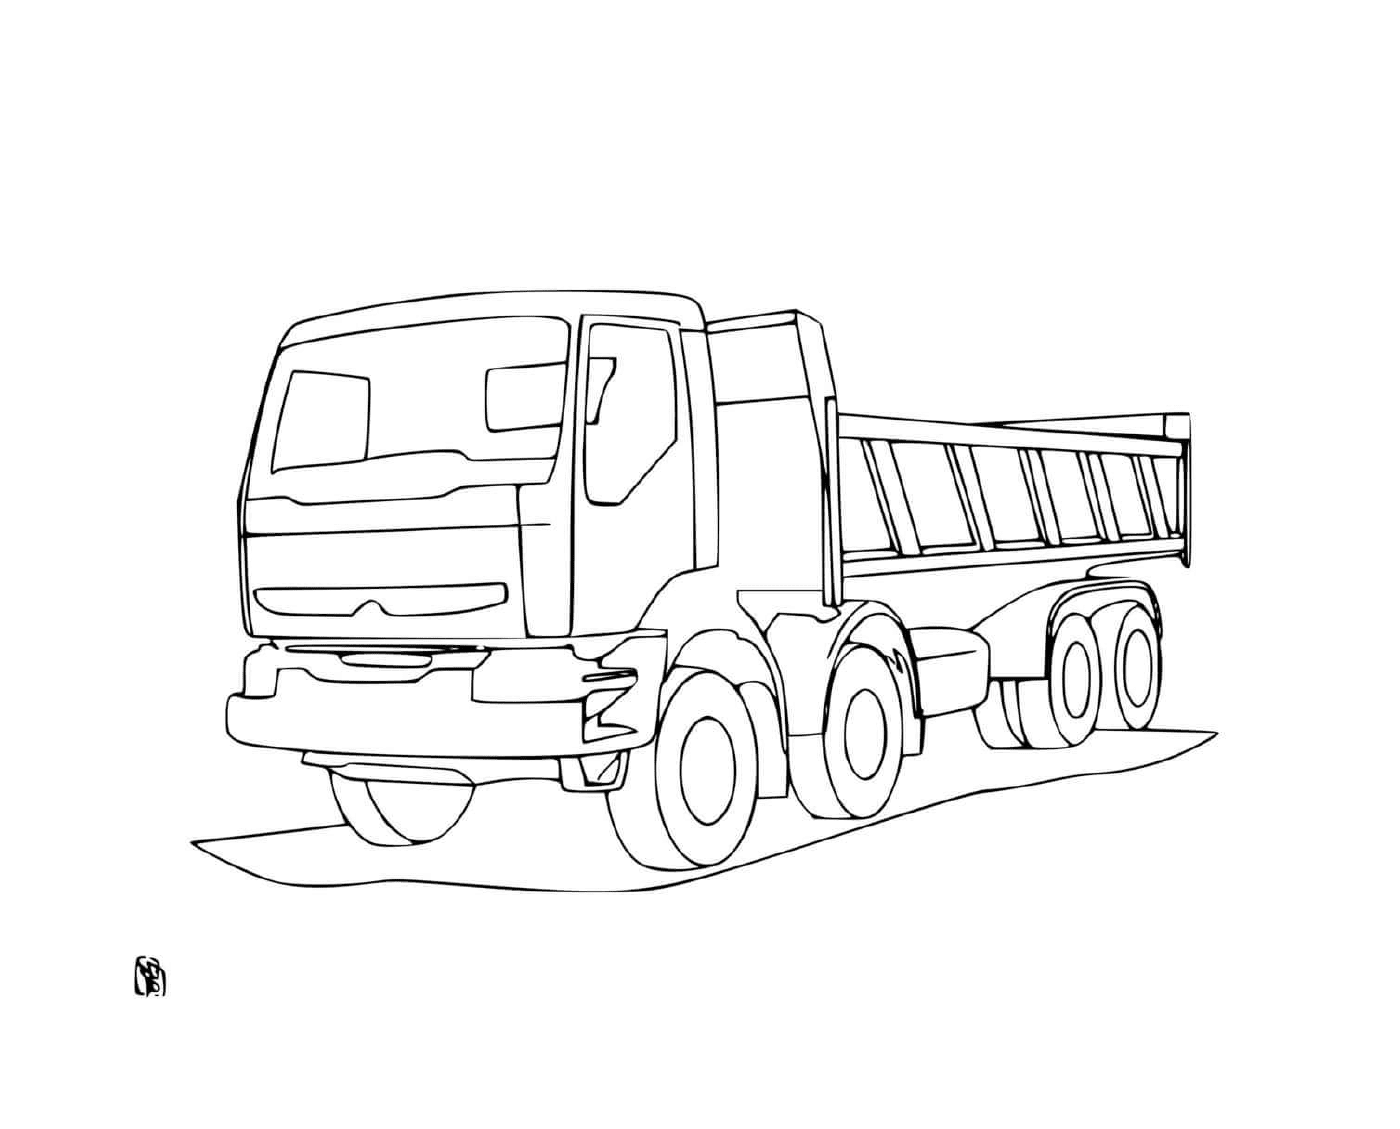  شاحنة فولفو من موقع البناء، قوية وقوية 